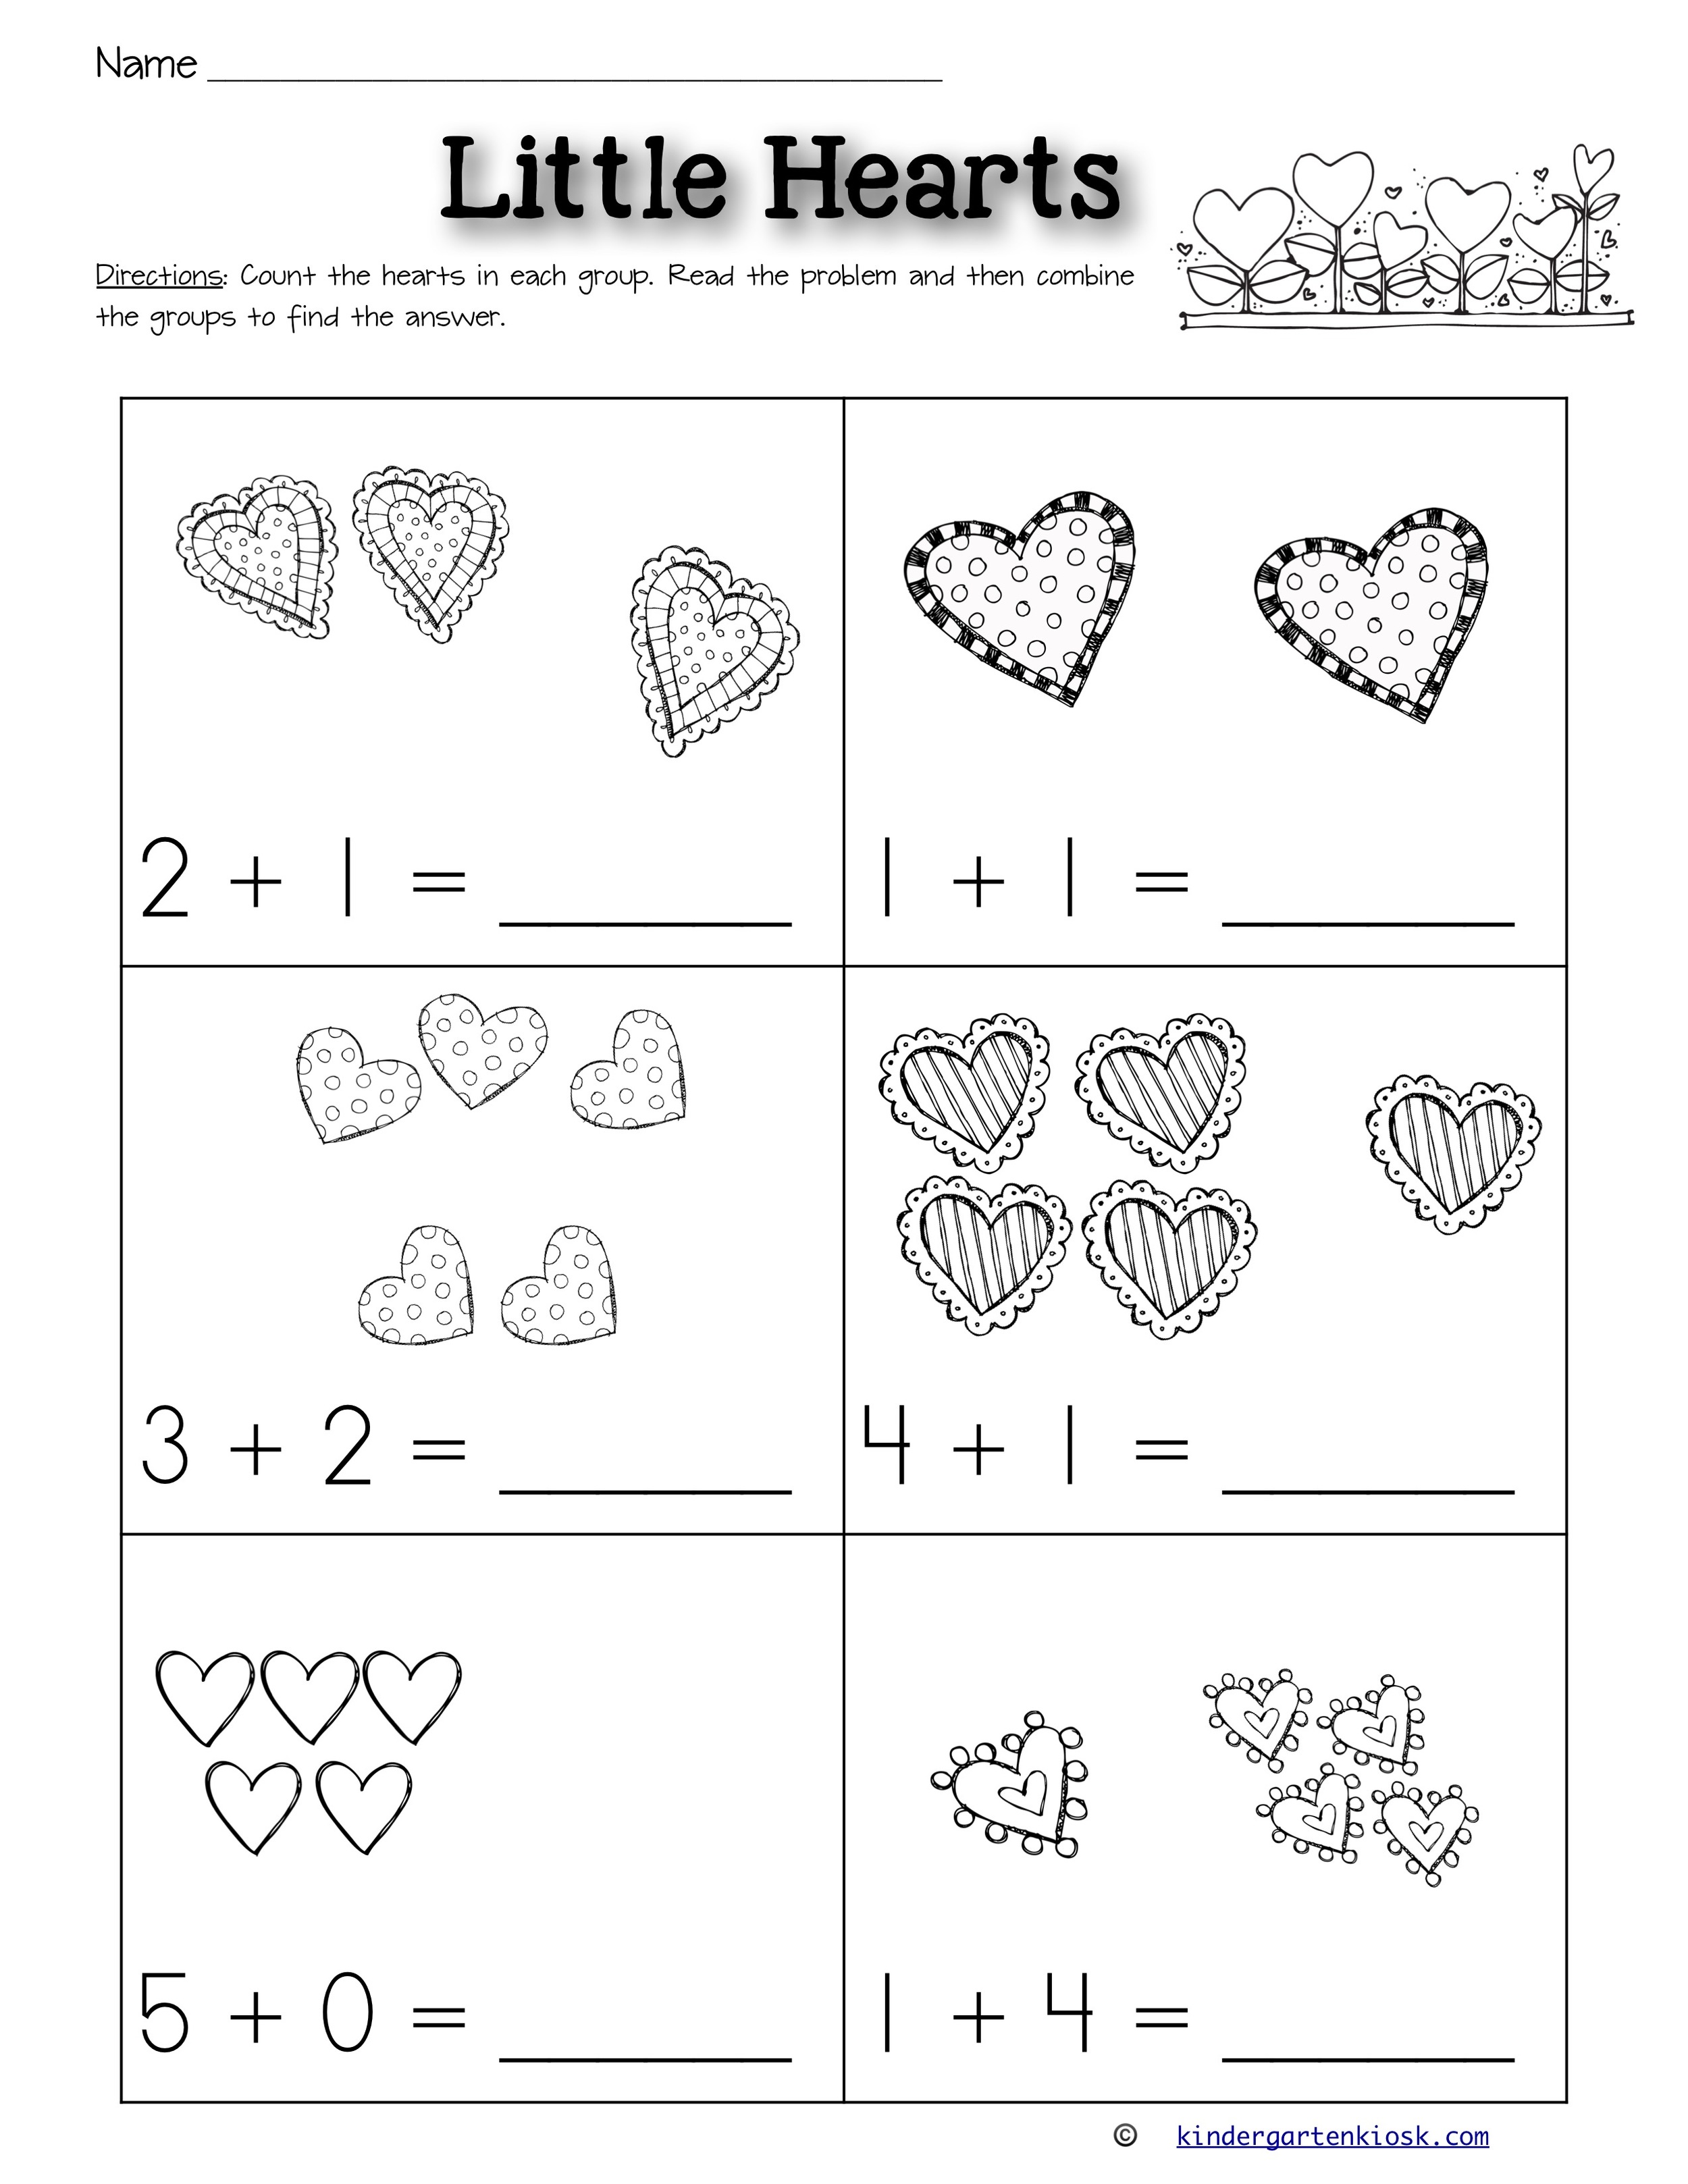 Addition 05 Worksheets February — Kindergarten Kiosk